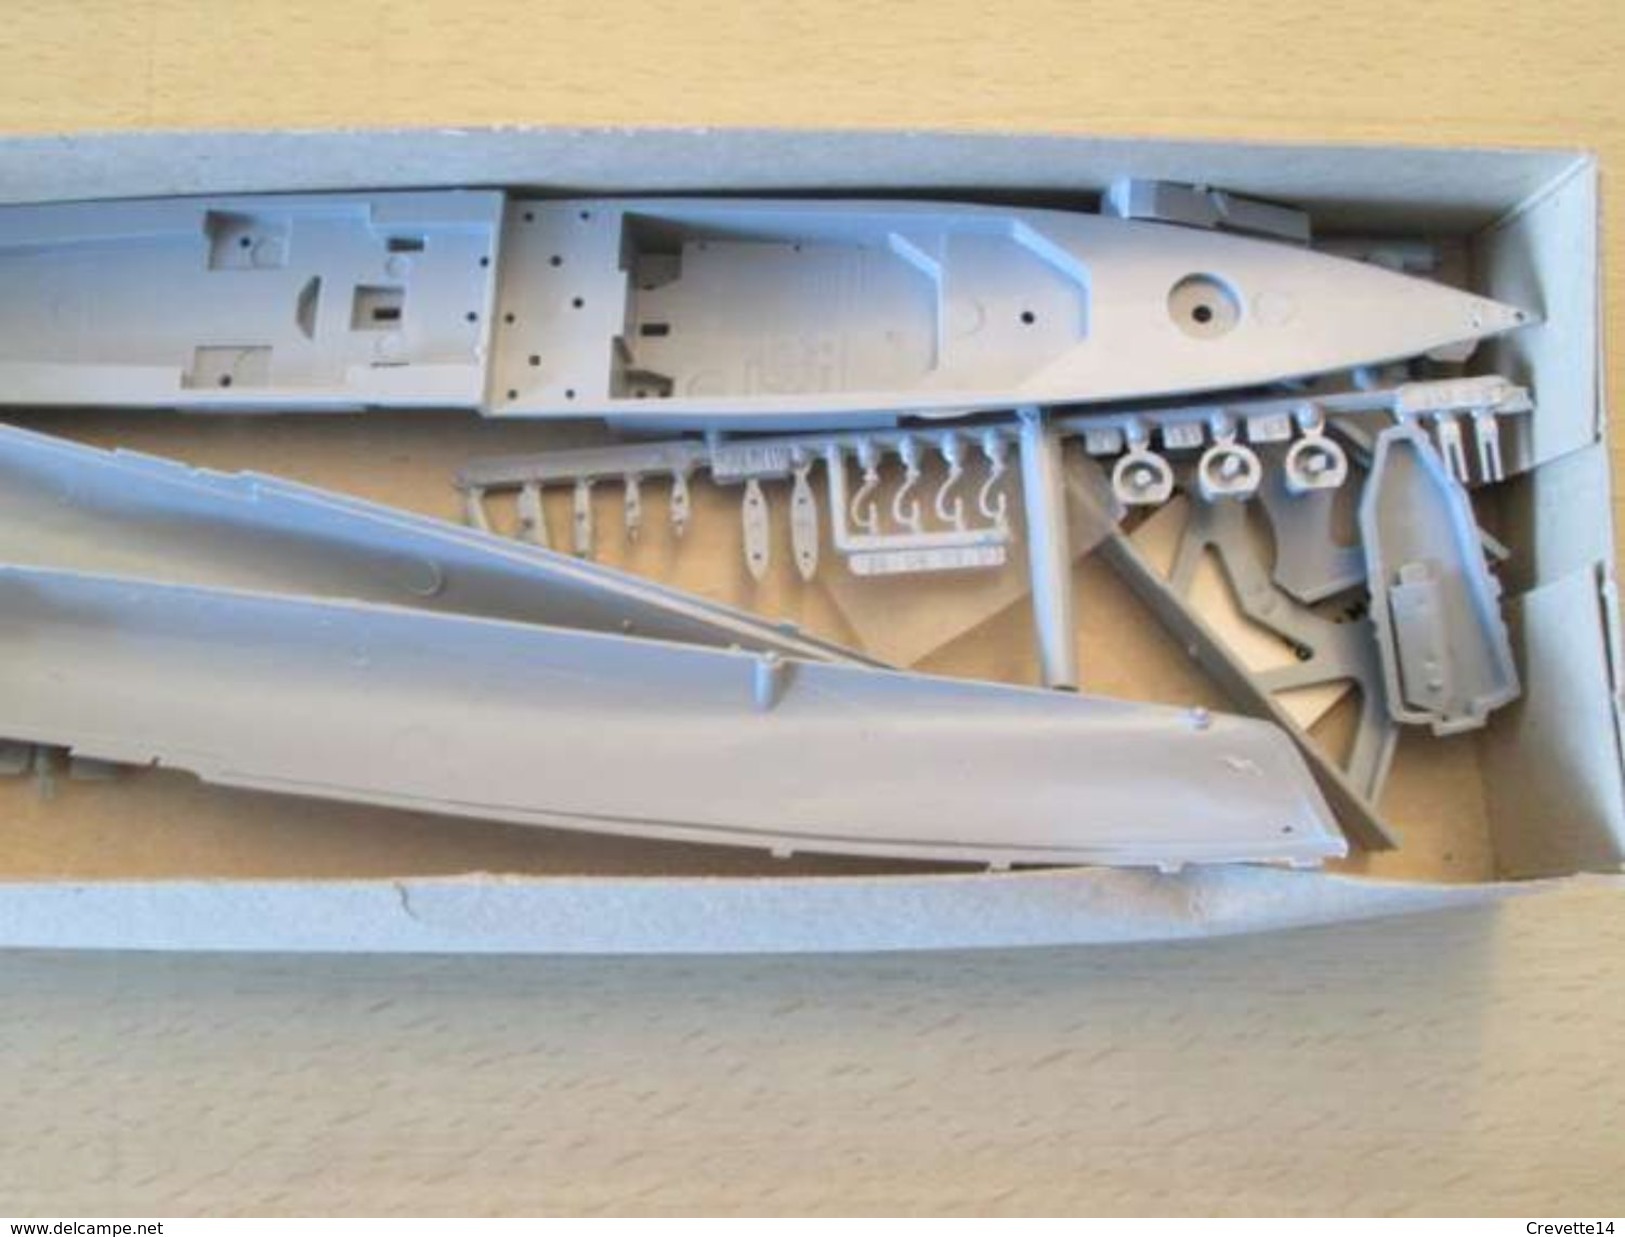 Kit515 Maquette Plastique à Monter - échelle 1/600e BOITAGE ANCIEN AIRFIX : CROISEUR HMS TIGER , Complète Et Non Commenc - Bâteaux